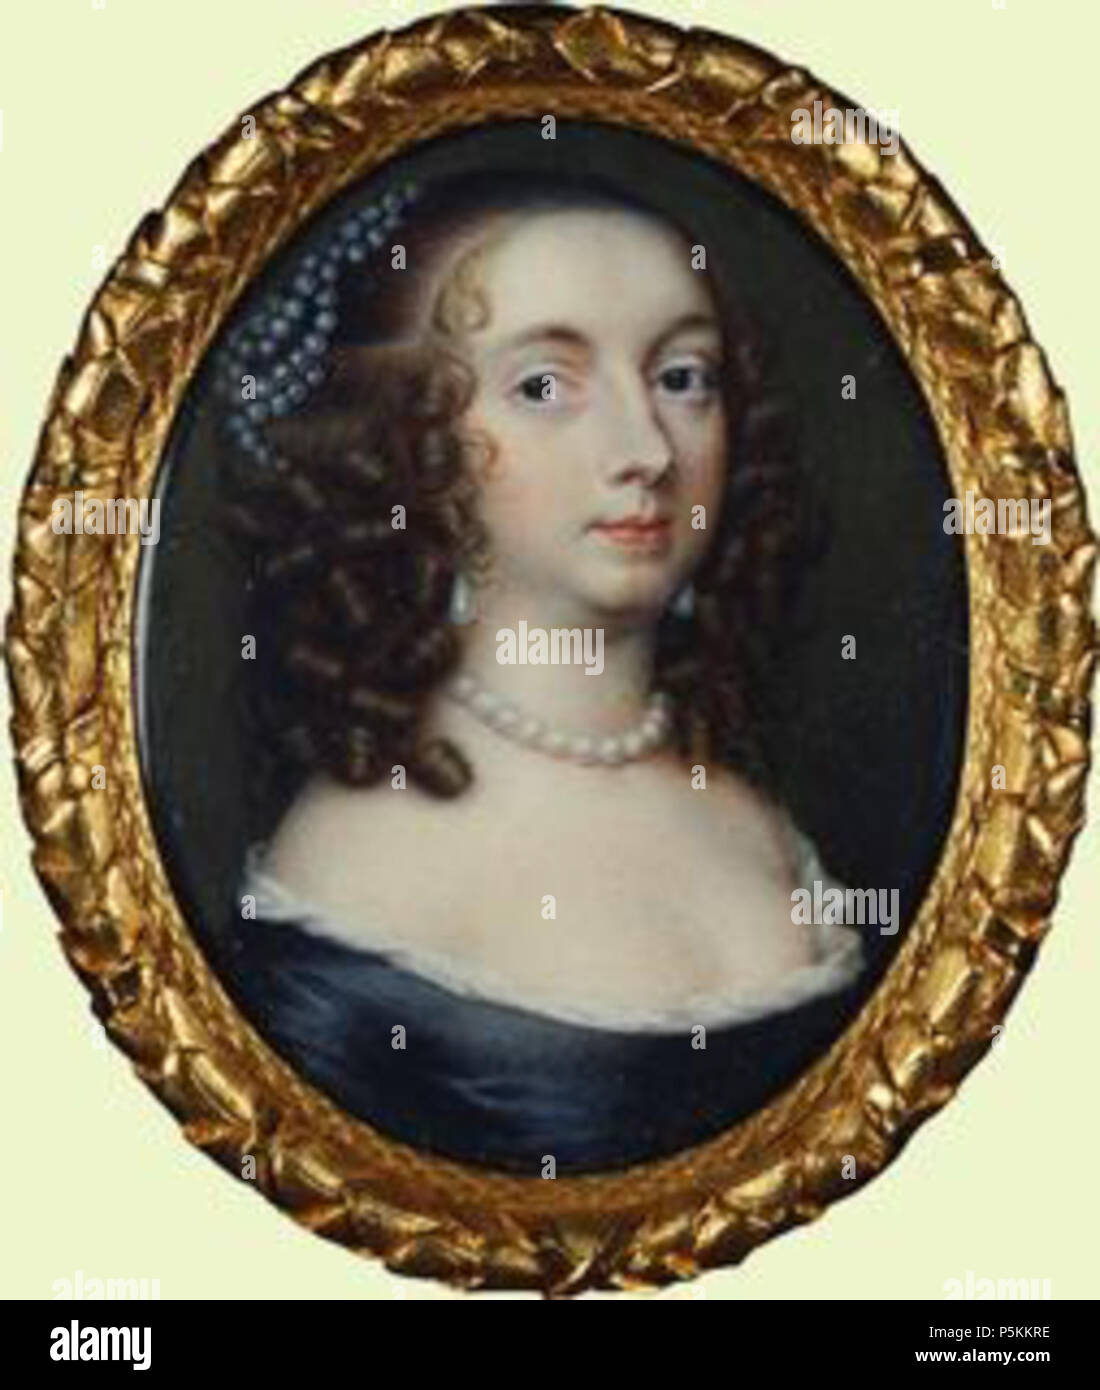 N/A. Englisch: Hon. Anne de Vere war im Jahre 1618 in den Niederlanden geboren. Sie war die Tochter von Horatio de Vere, im 1. und letzten Baron Vere von Tilbury und Maria, Tracy. Sie heiratete Thomas Fairfax, 3. Herr Fairfax von Cameron, Sohn von Ferdinand Fairfax, 2. Herr Fairfax von Cameron und Lady Mary Sheffield, am 20. Juni 1637. Sie starb am 16. Oktober 1665 An der Nonne Appleton, Bolton Percy, Yorkshire, England. Kind von Hon. Anne de Vere und Thomas Fairfax, 3. Herr Fairfax von Cameron * Hon. Mary Fairfax 1 b. 30. Juli 1638, d. 20 Okt 1704. 30. September 2009. Lisby 105 Anne de Vere, Lady Fairfax Stockfoto